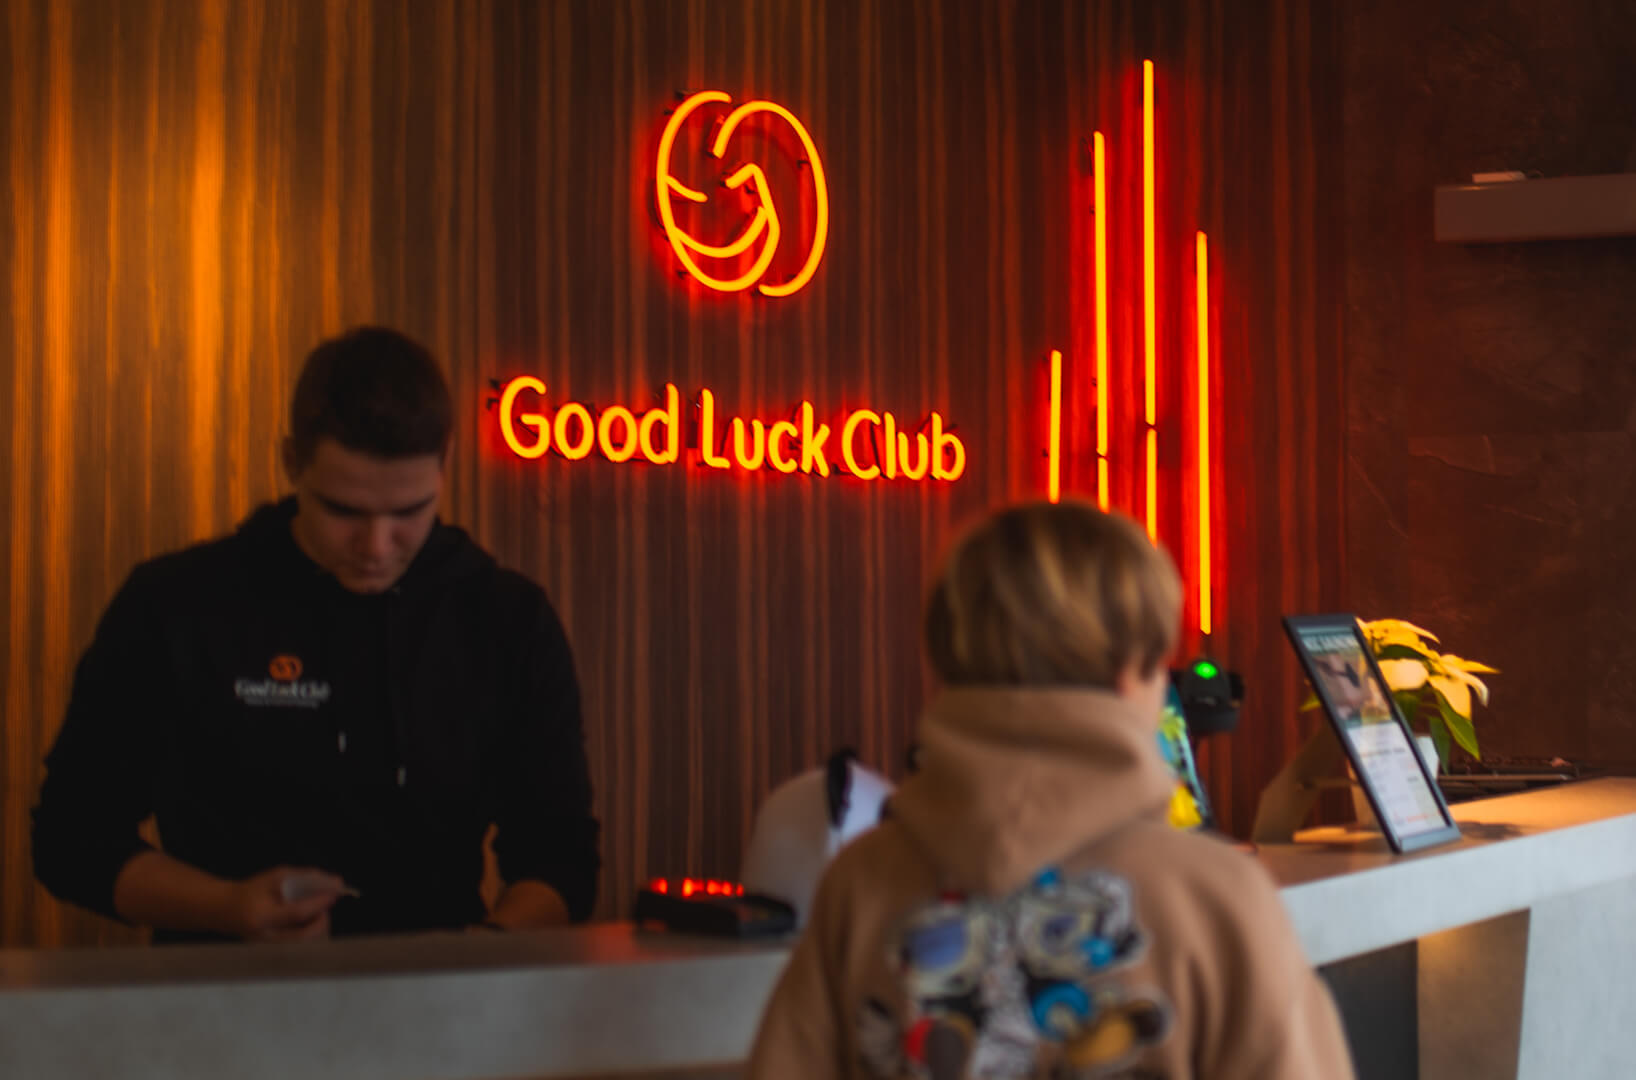 Good Luck Club - Czerwony neon w recepcji wraz z logo firmy.